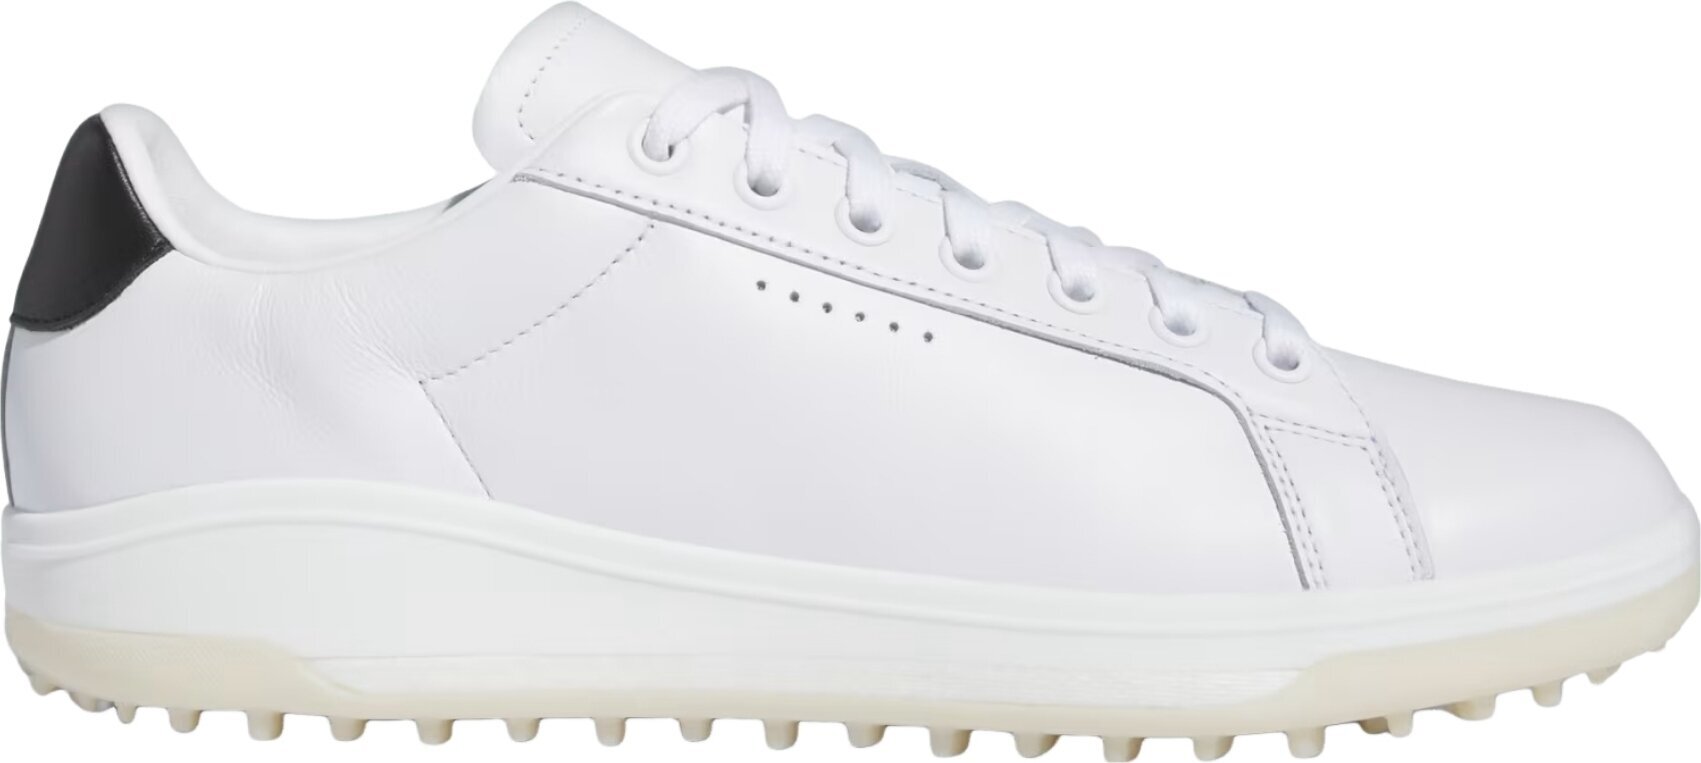 Calçado de golfe para homem Adidas Go-To Spikeless 2.0 Mens Golf Shoes White/Core Black/Aluminium 45 1/3